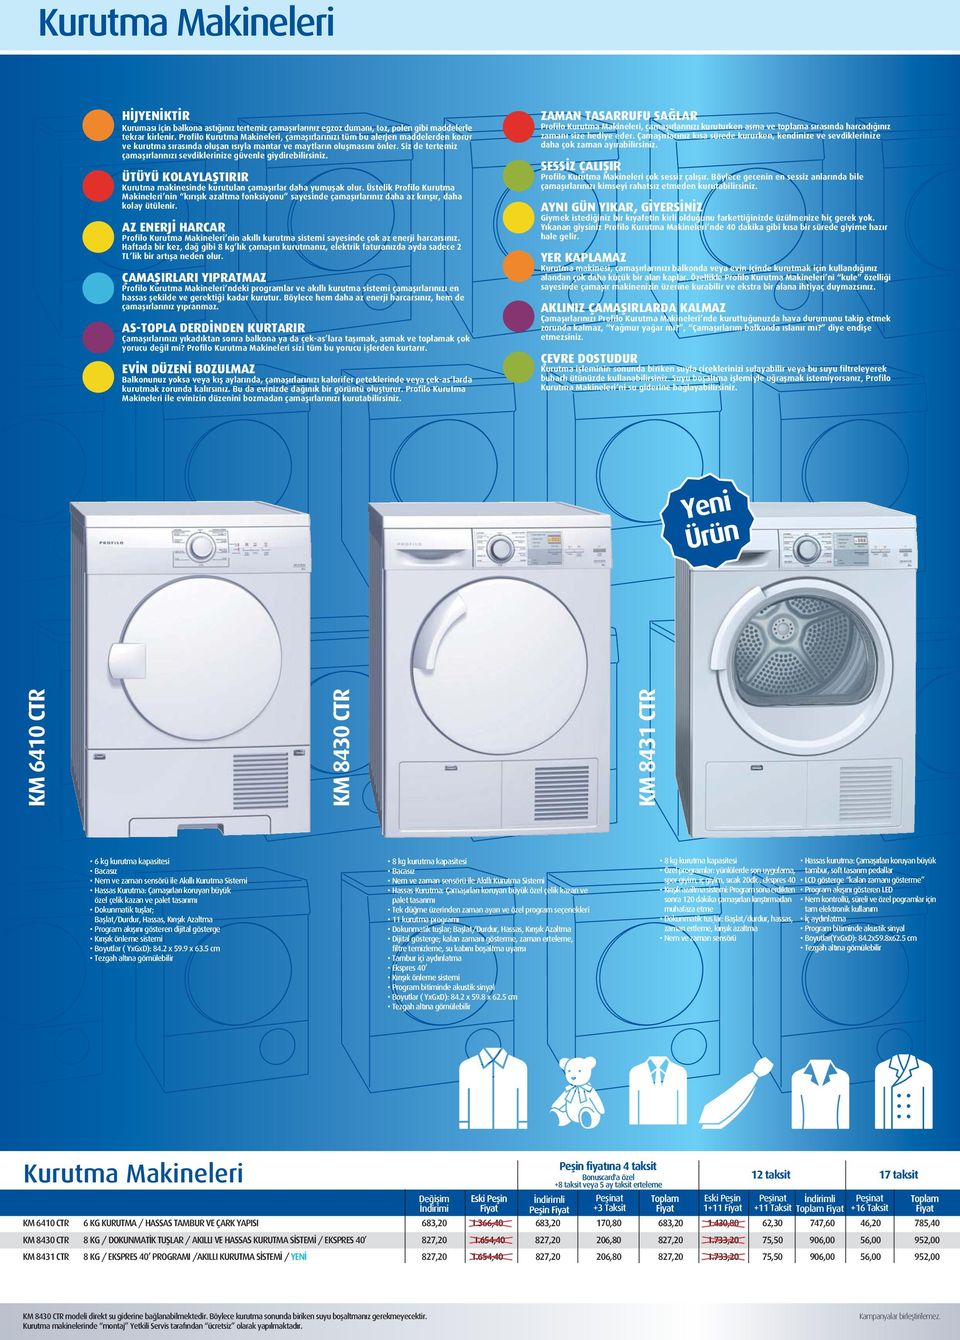 Siz de tertemiz çamaşırlarınızı sevdiklerinize güvenle giydirebilirsiniz. ÜTÜYÜ KOLYLŞTIRIR Kurutma makinesinde kurutulan çamaşırlar daha yumuşak olur.